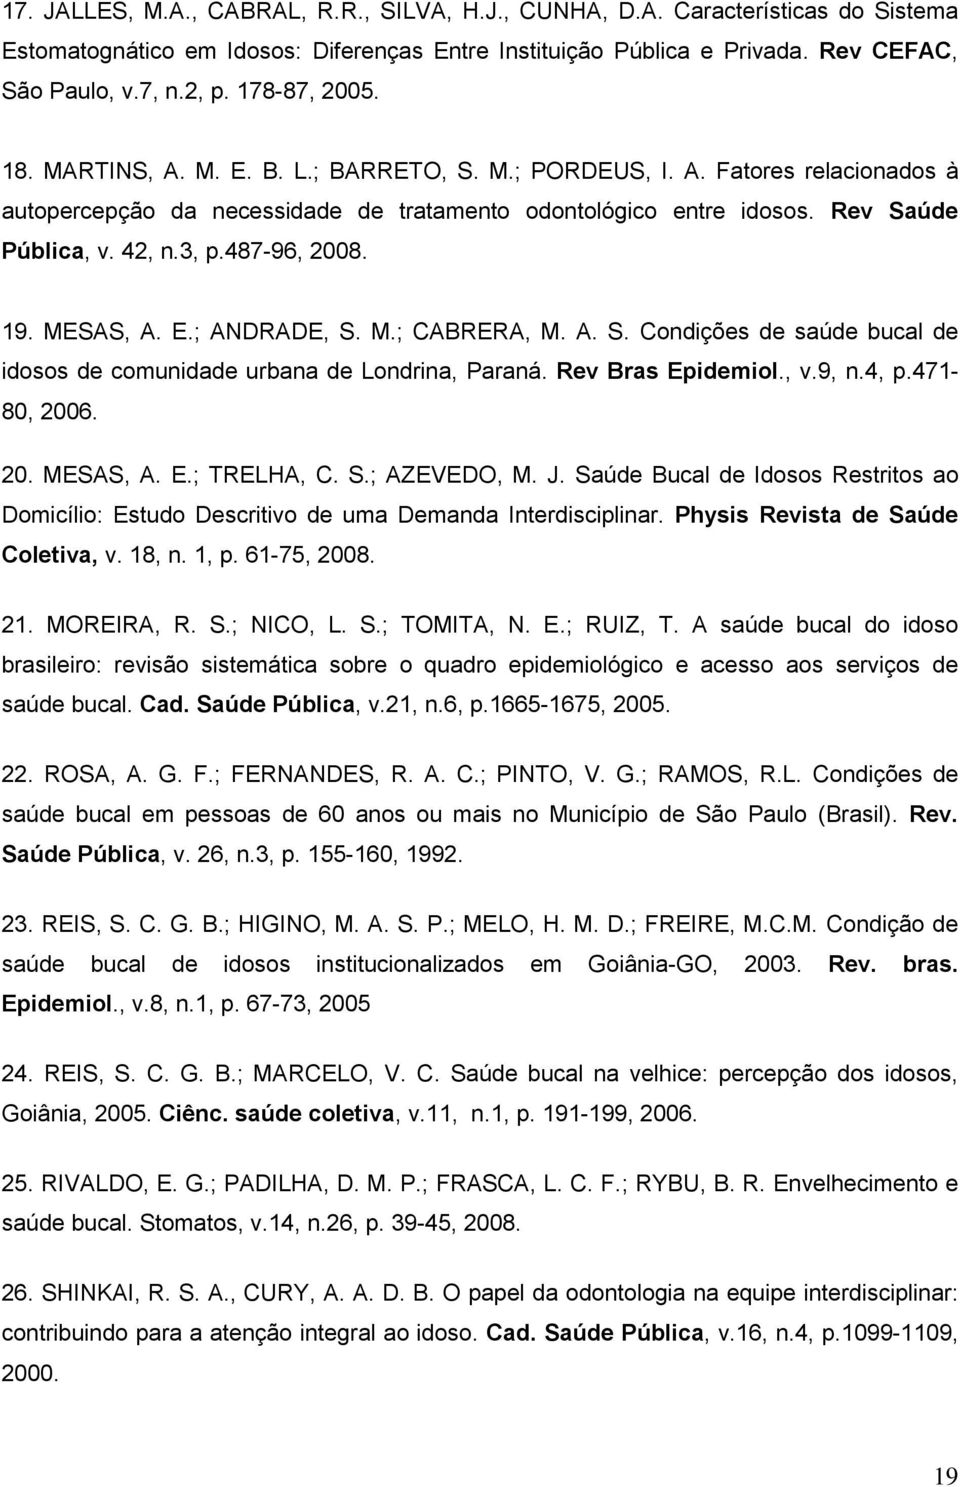 487-96, 2008. 19. MESAS, A. E.; ANDRADE, S. M.; CABRERA, M. A. S. Condições de saúde bucal de idosos de comunidade urbana de Londrina, Paraná. Rev Bras Epidemiol., v.9, n.4, p.471-80, 2006. 20. MESAS, A. E.; TRELHA, C.